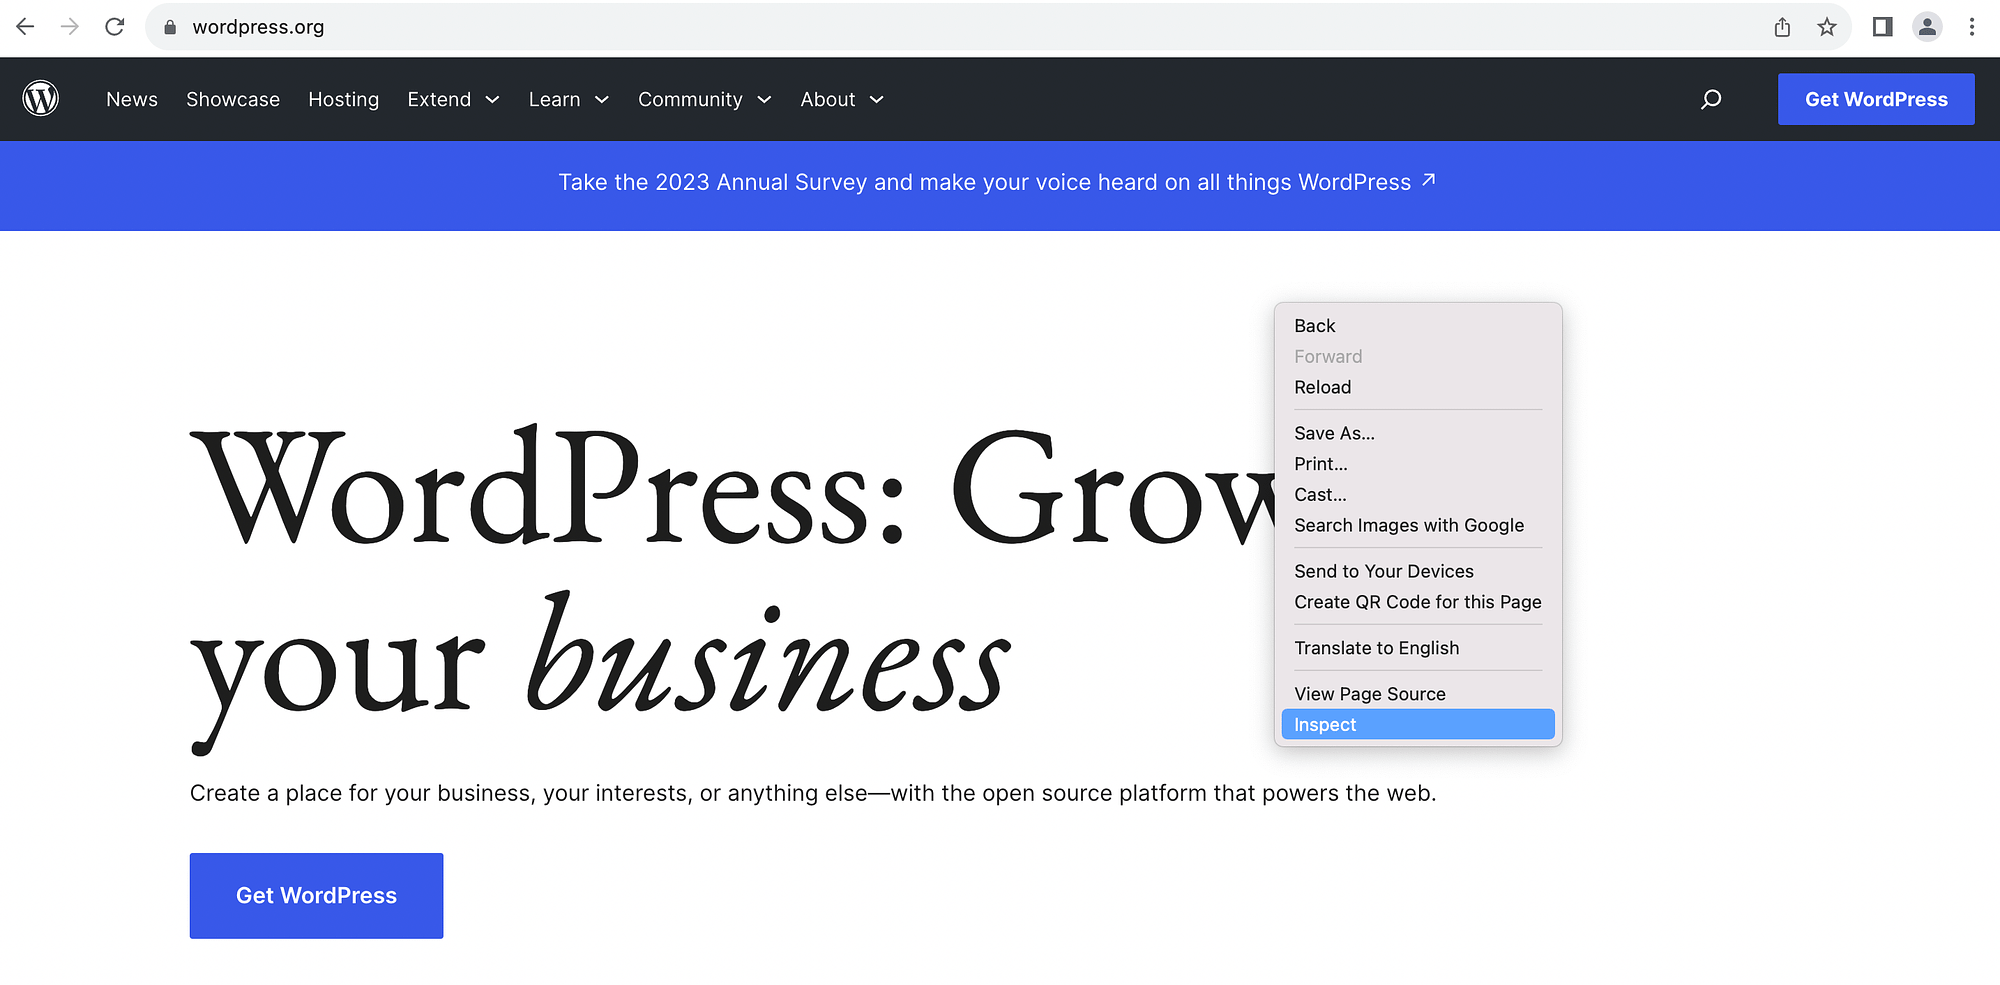 فحص الصفحة الرئيسية لـ WordPress.org.